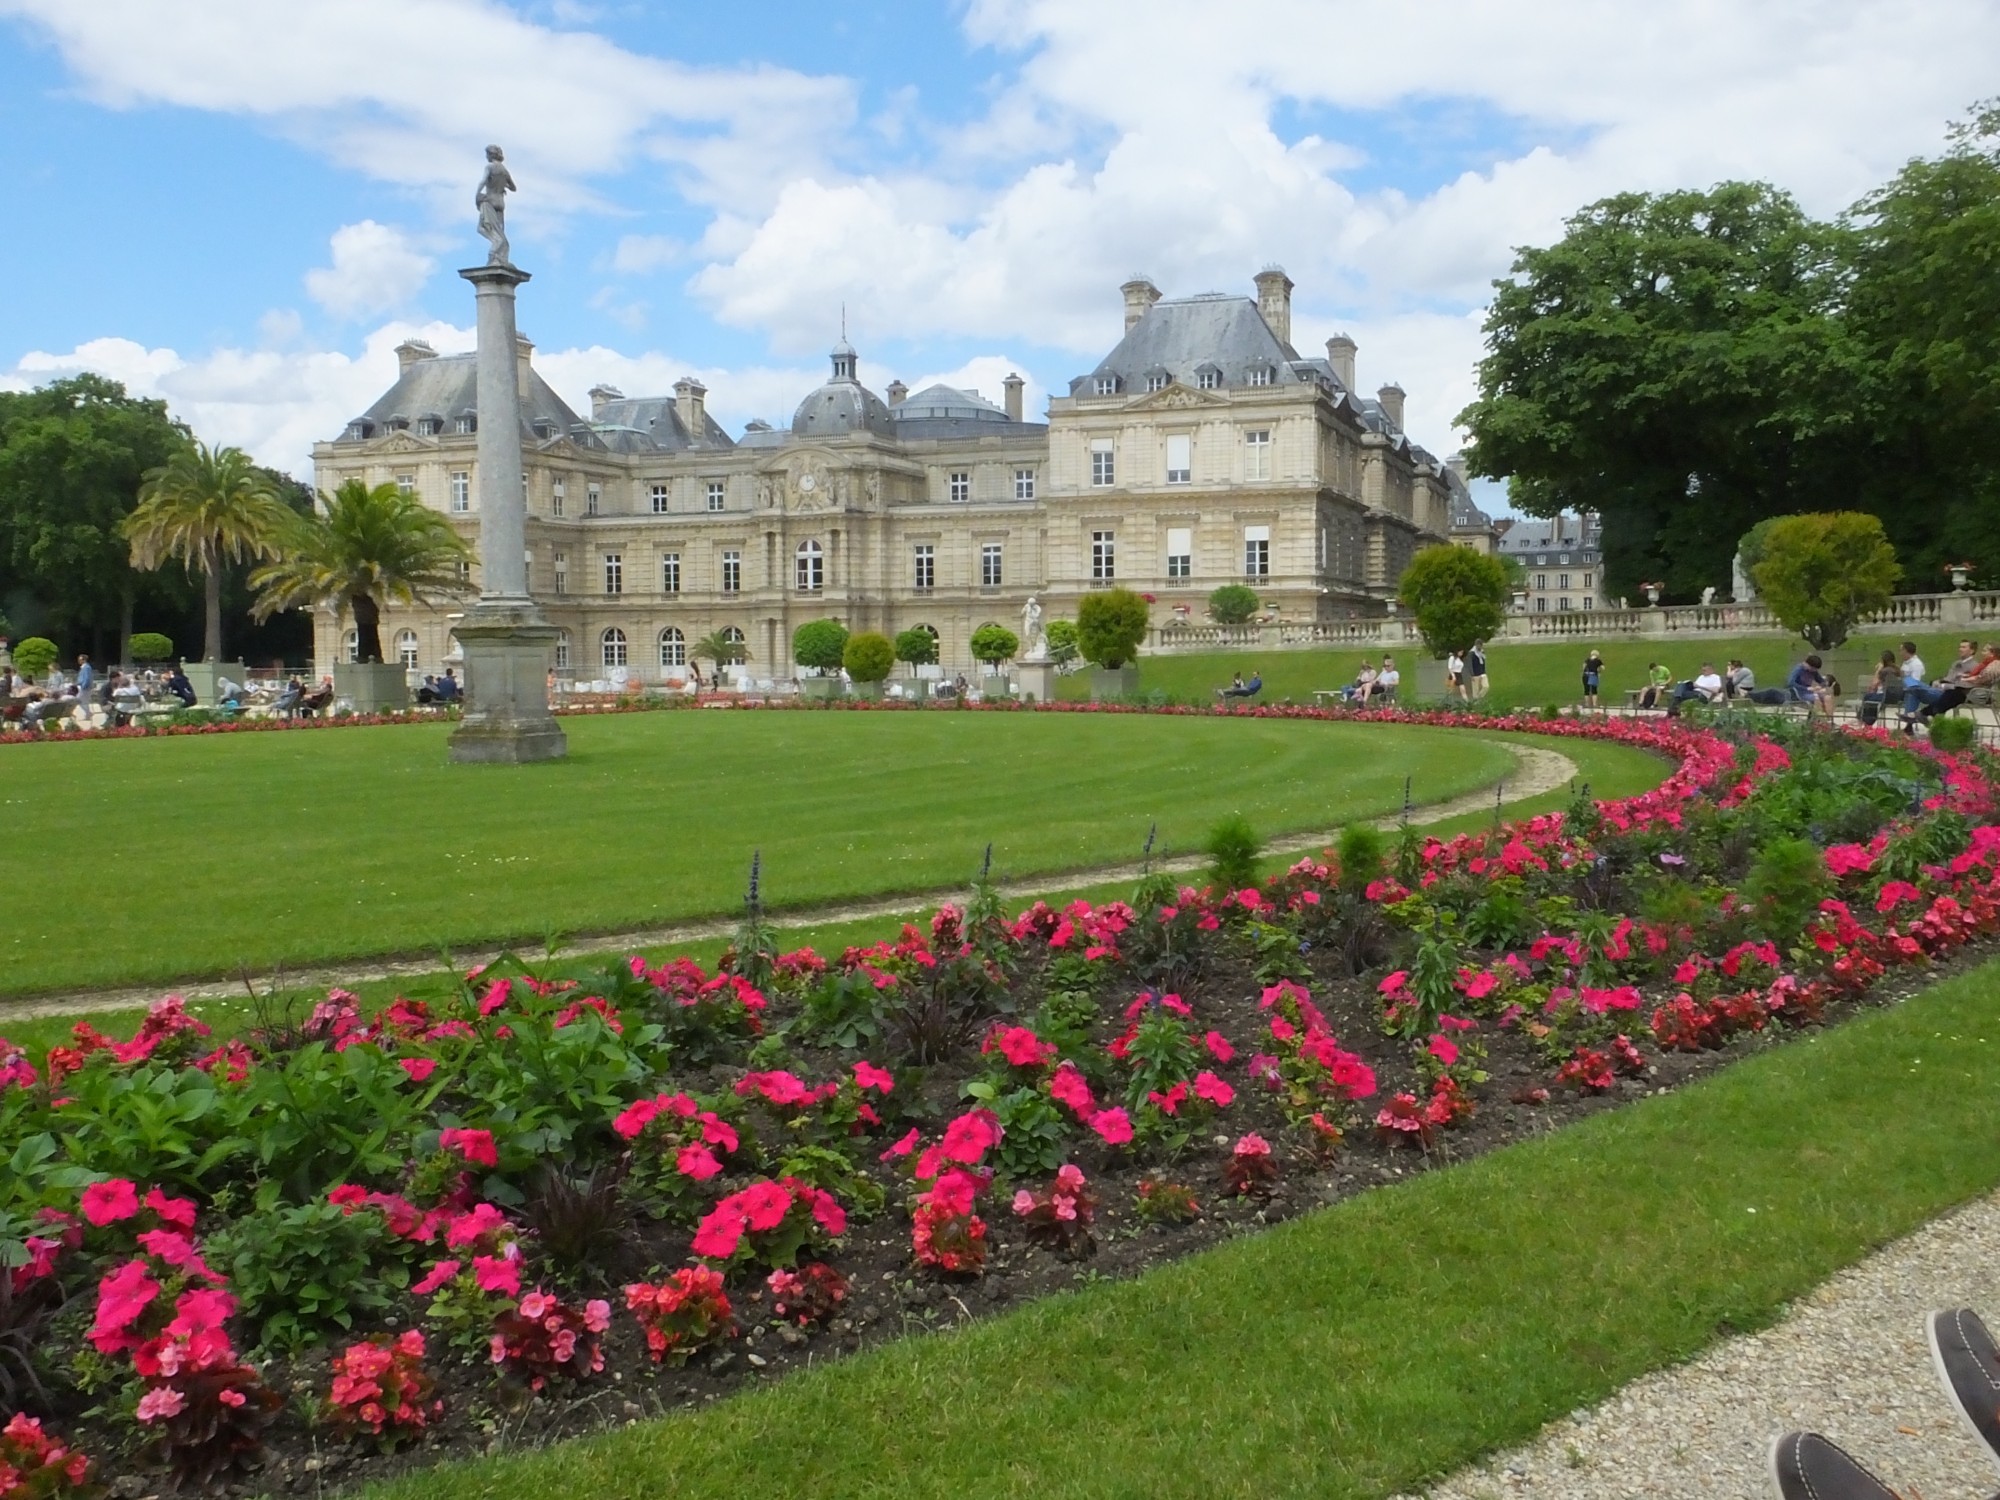 Luxemburg Gardens